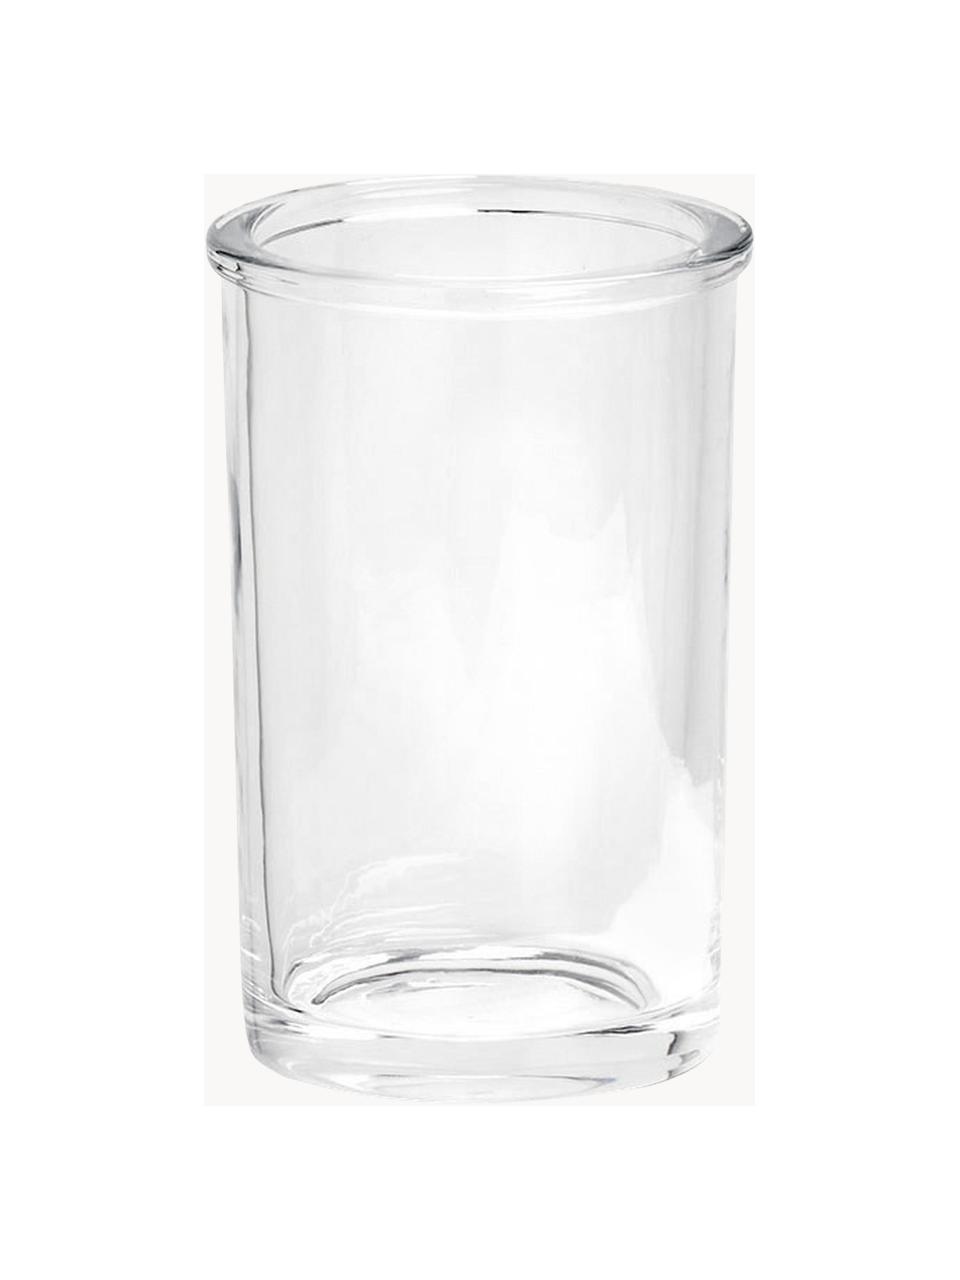 Porta spazzolini in vetro Clear, Vetro, Trasparente, Ø 7 x Alt. 11 cm